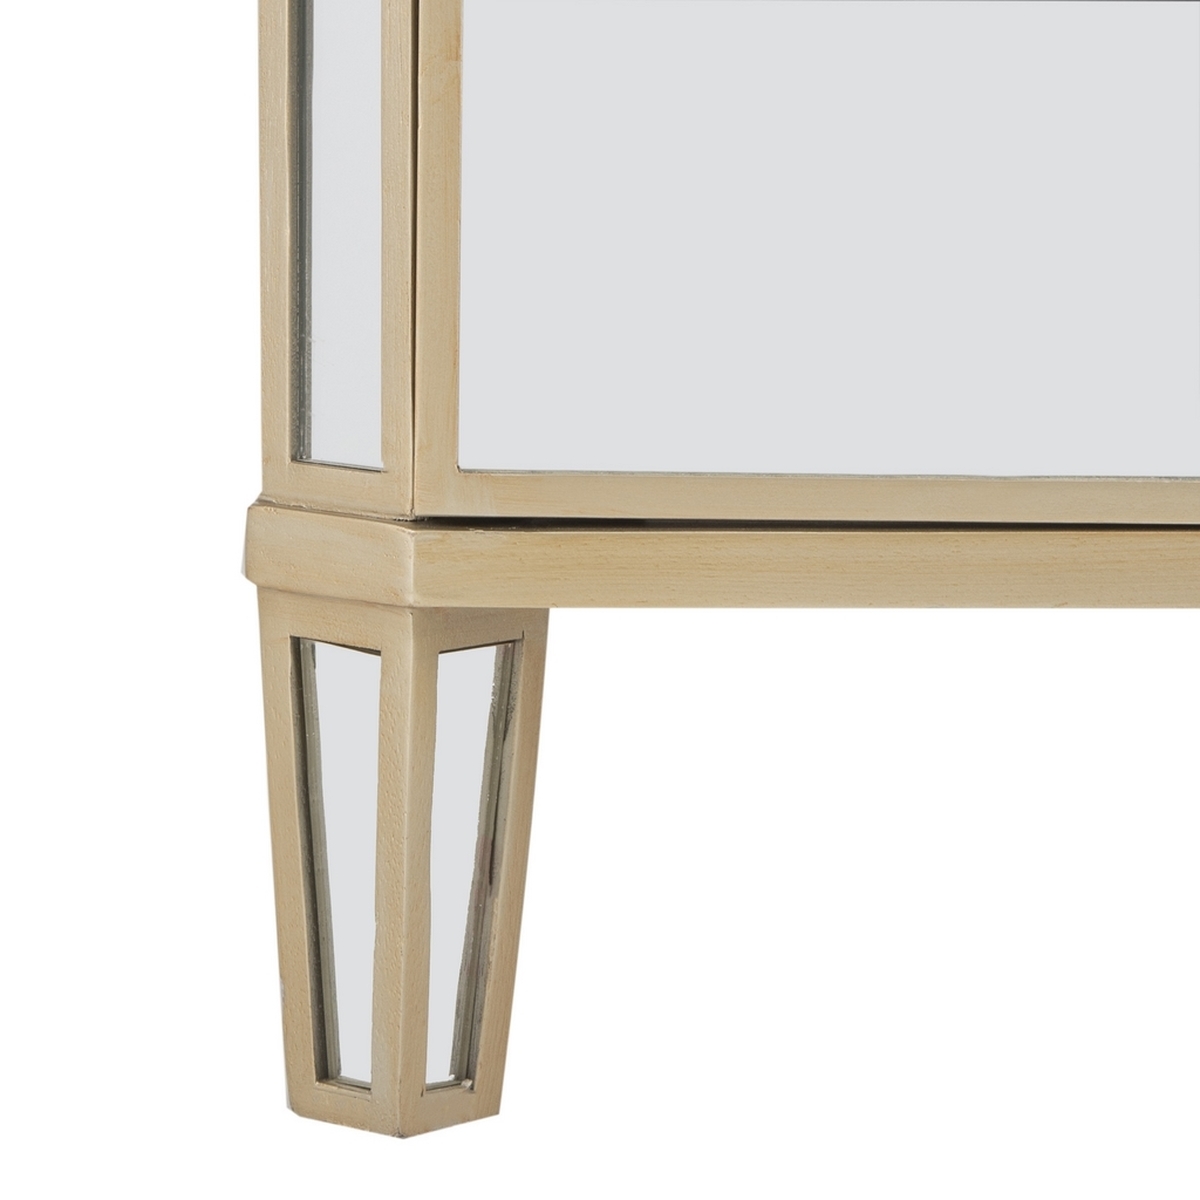 Giana 3 Drawer Mirrored Nightstand - Mirror - Safavieh - Image 4